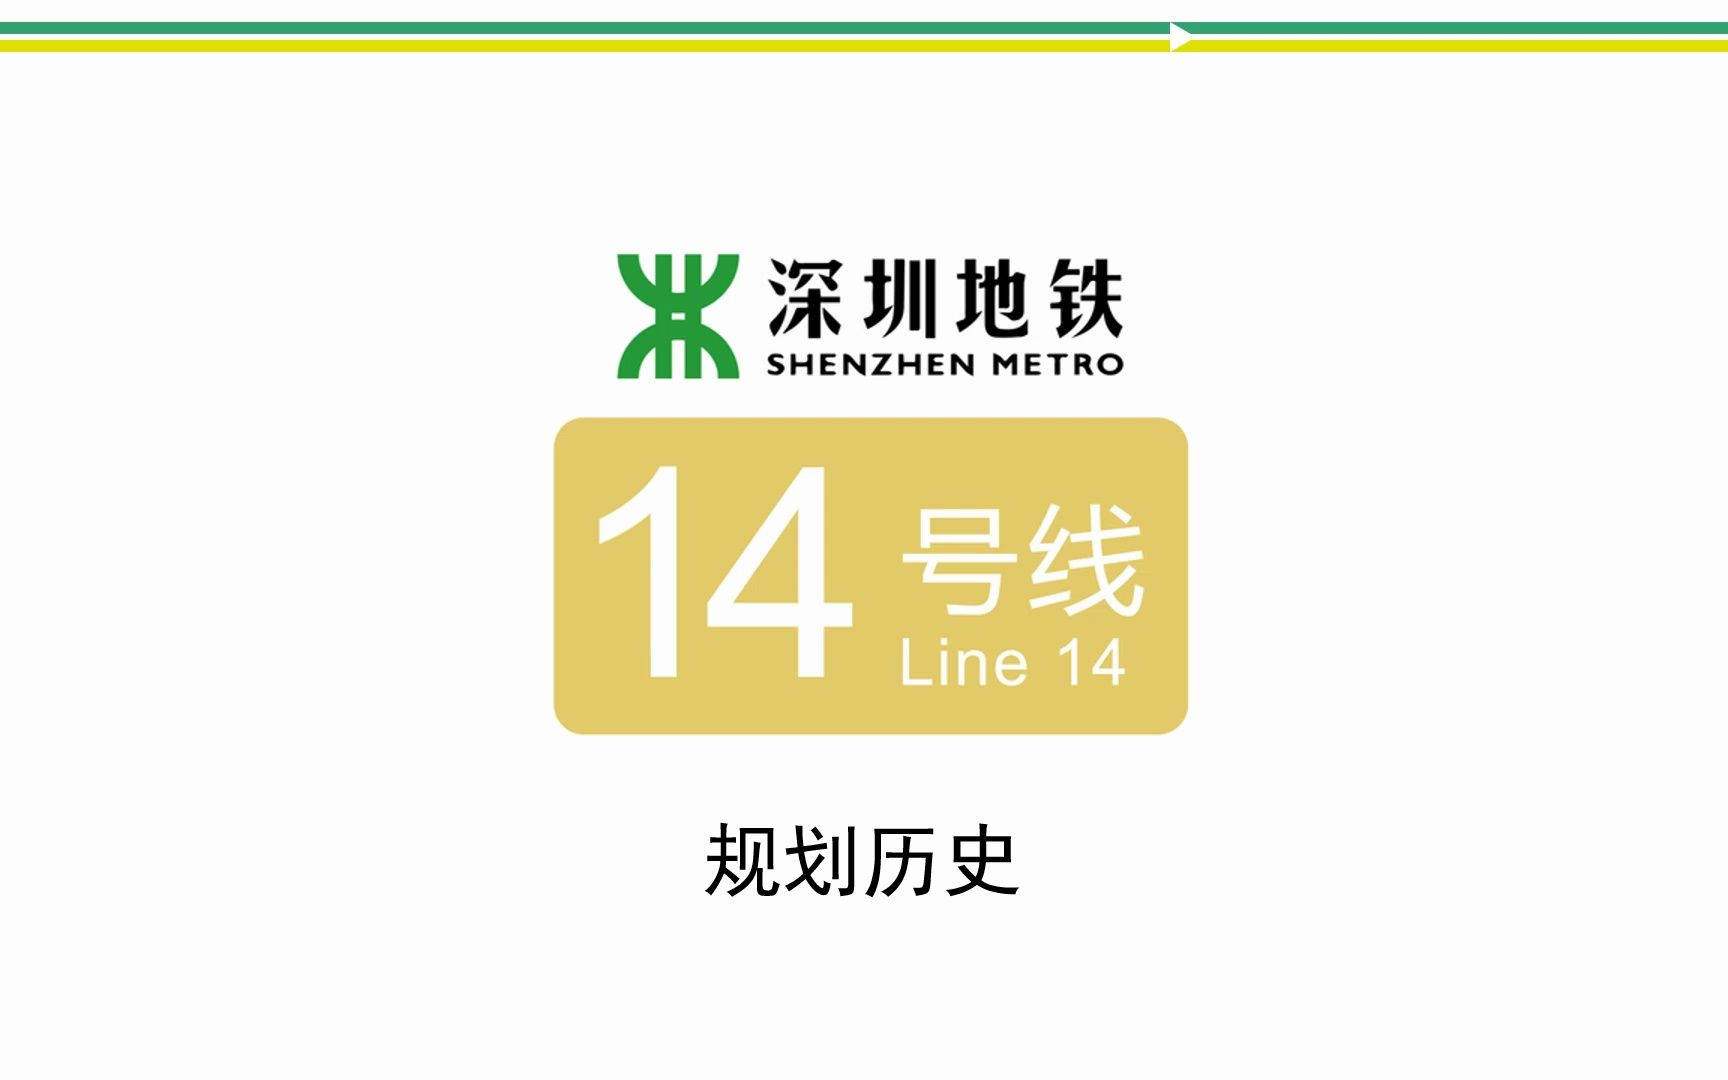 【深圳地铁】14号线远古规划与现在线路究竟有什么不同？14号线规划历史动态演示